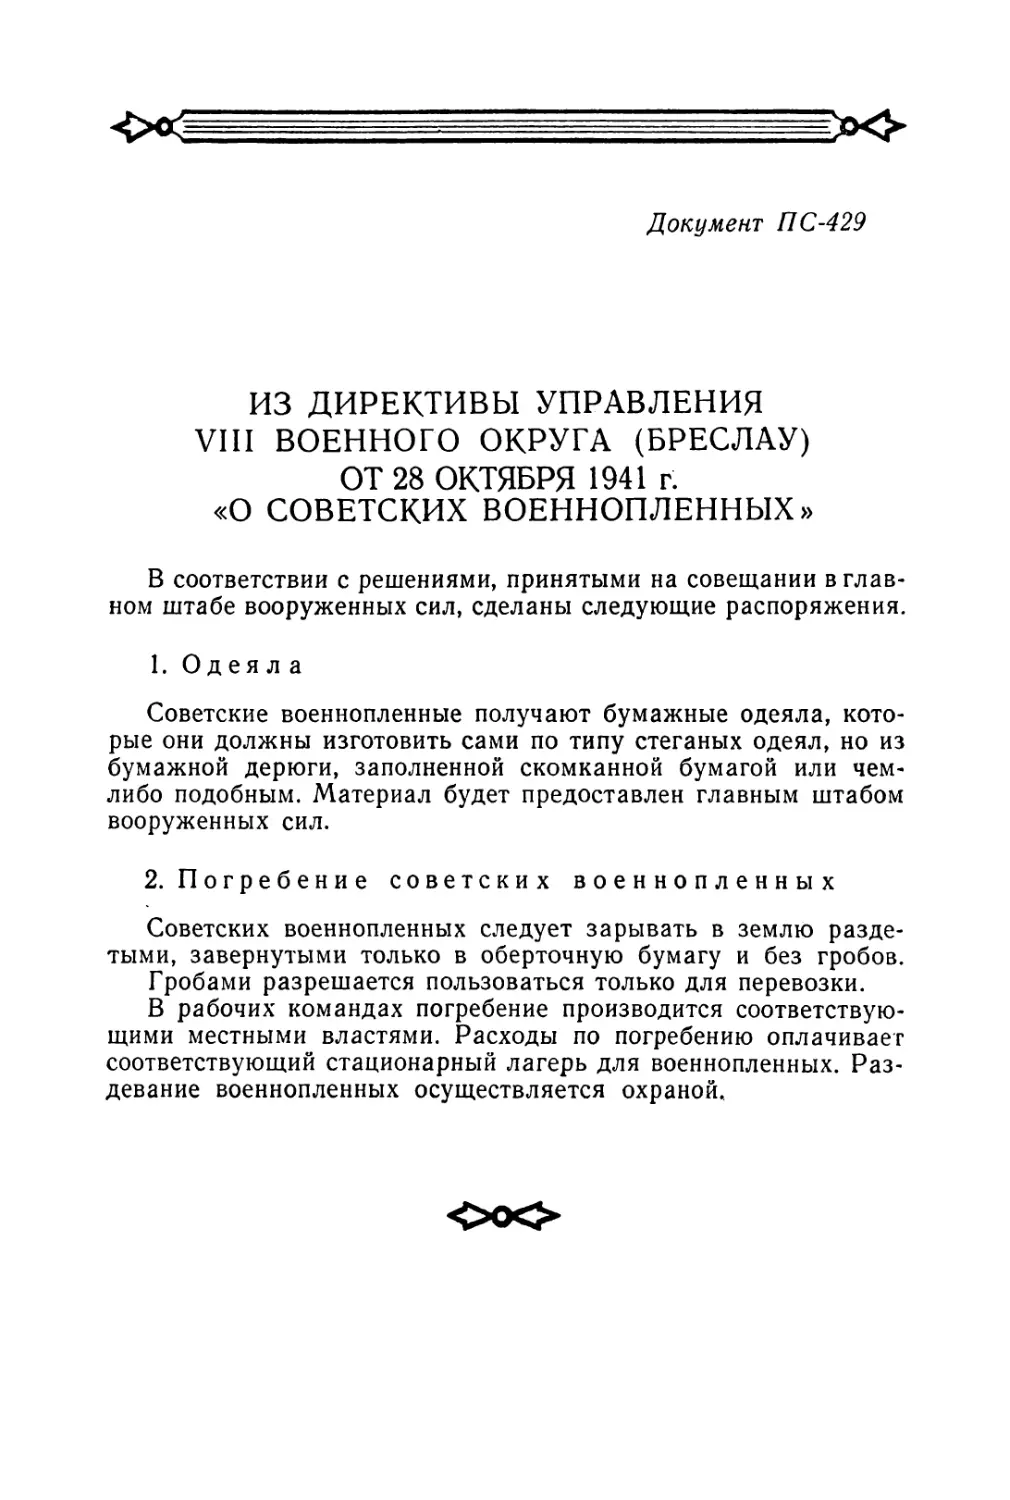 Из директивы управления VIII военного округа от 28 октября 1941 г. «О советских военнопленных»